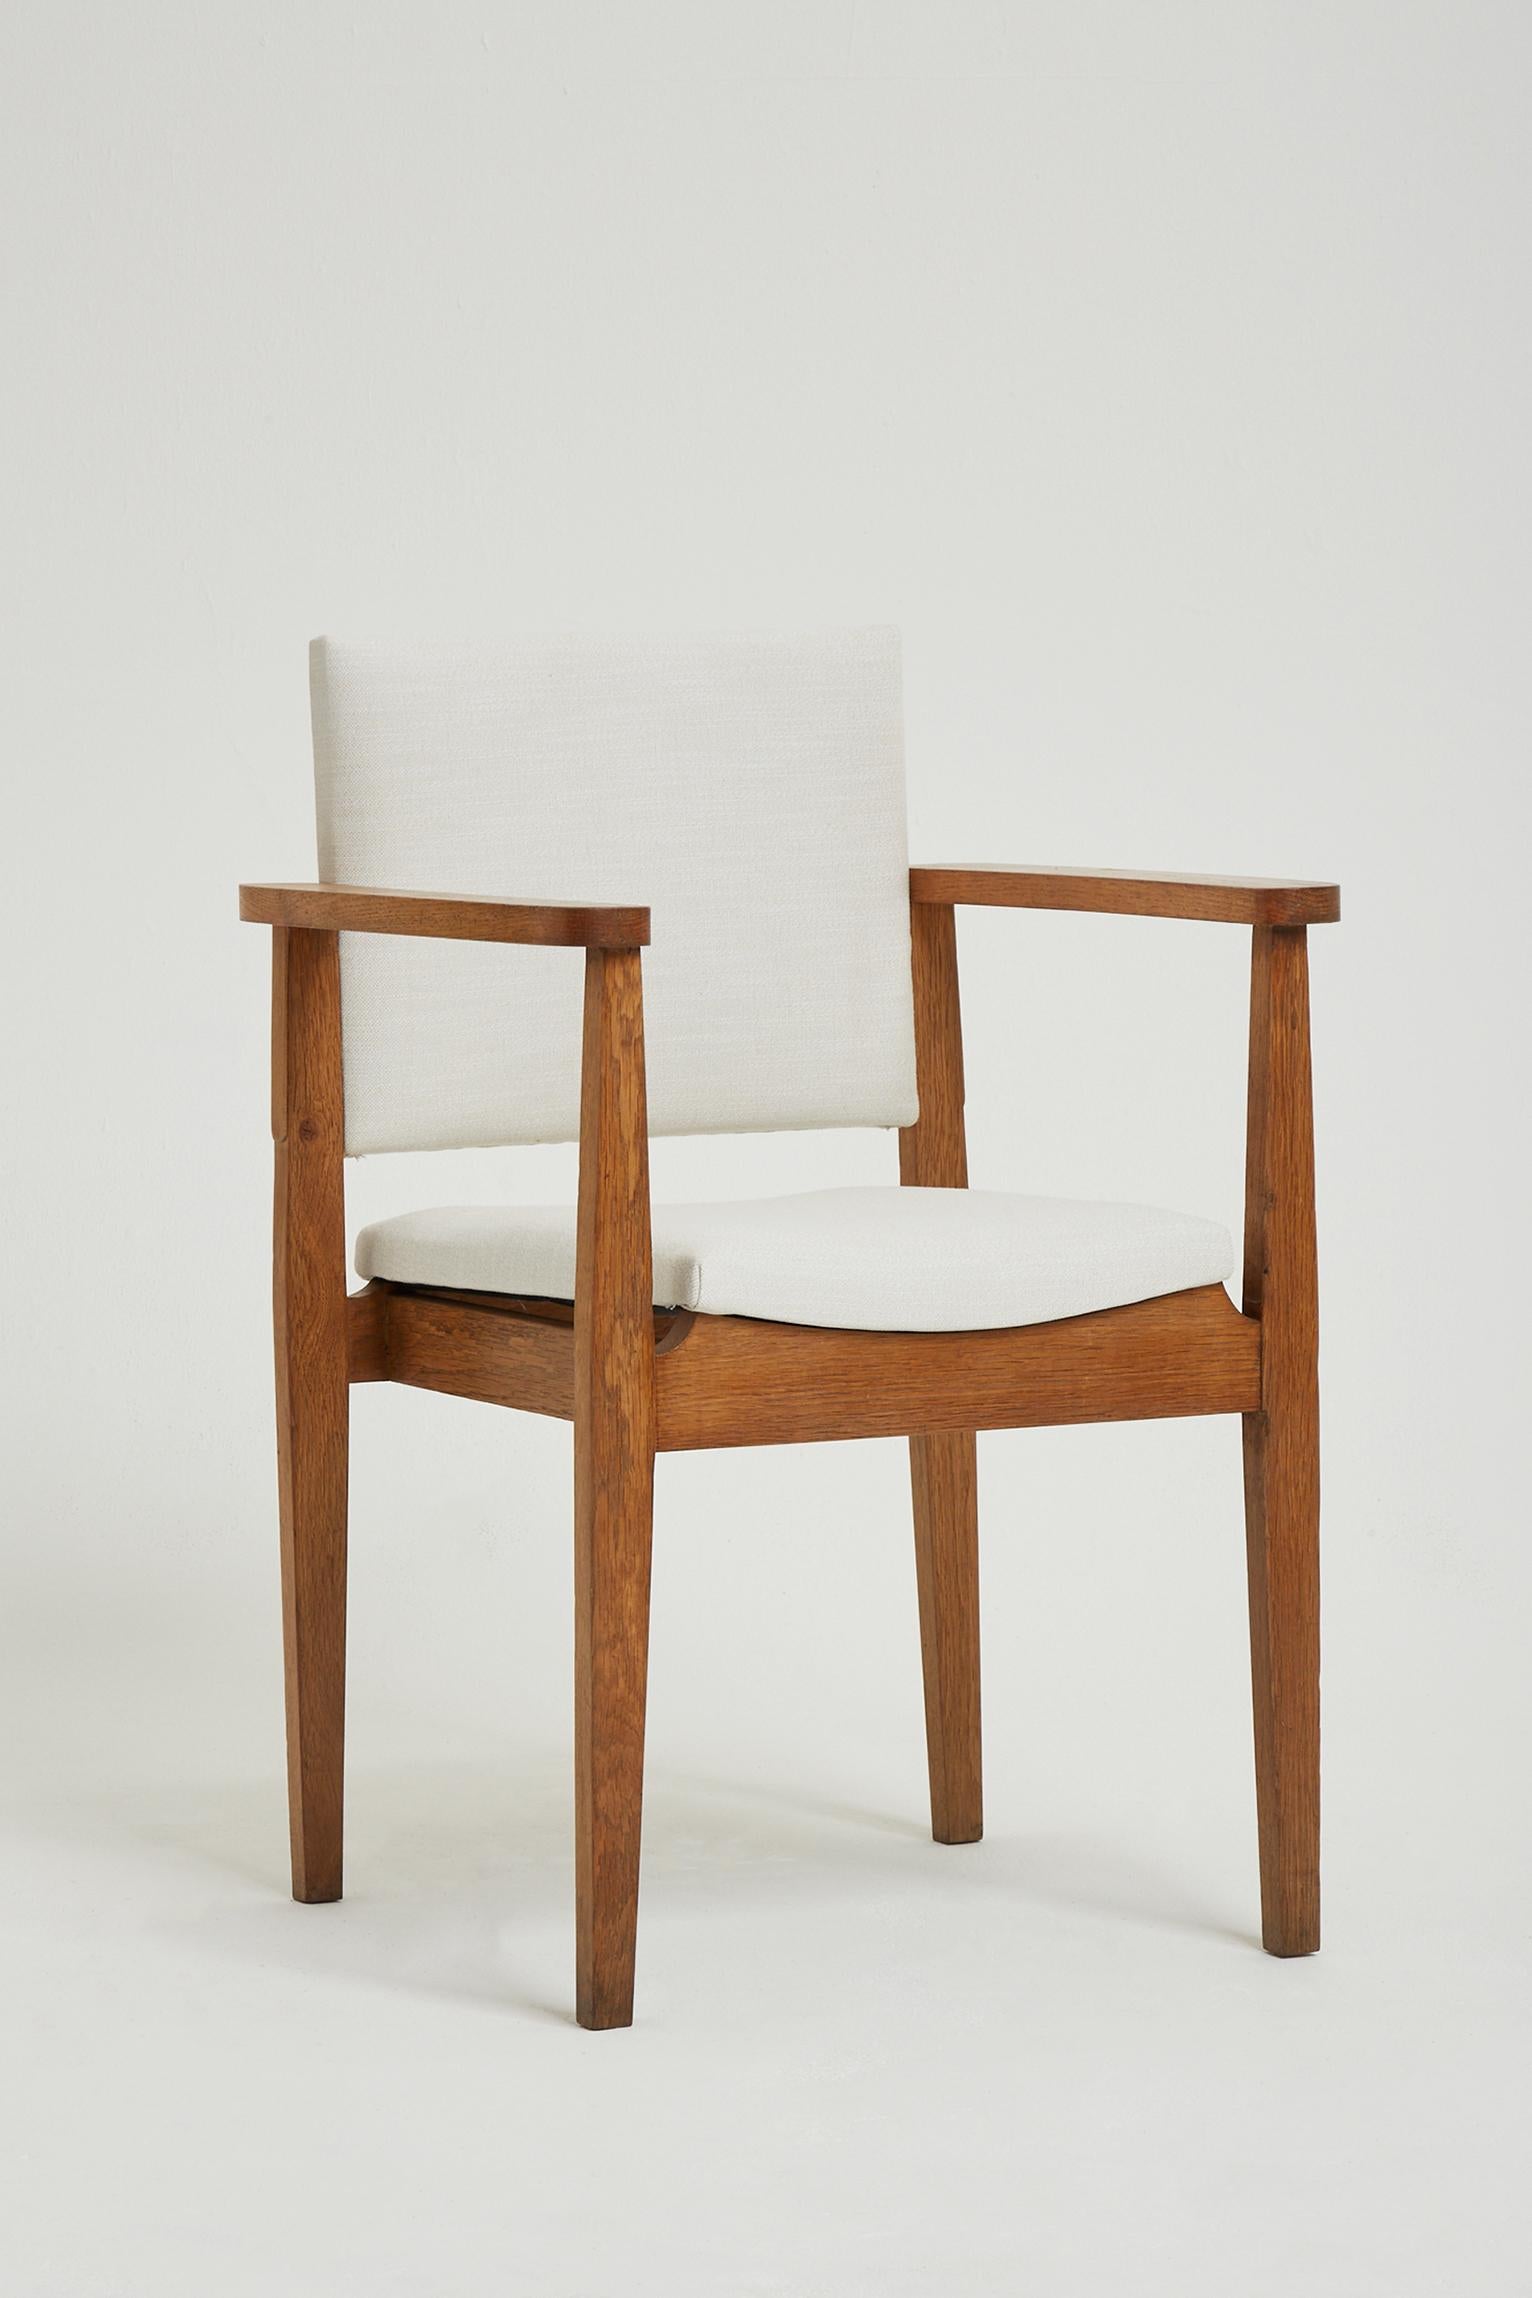 Ein Sessel aus massiver Eichenholz.
Frankreich, ca. 1940.